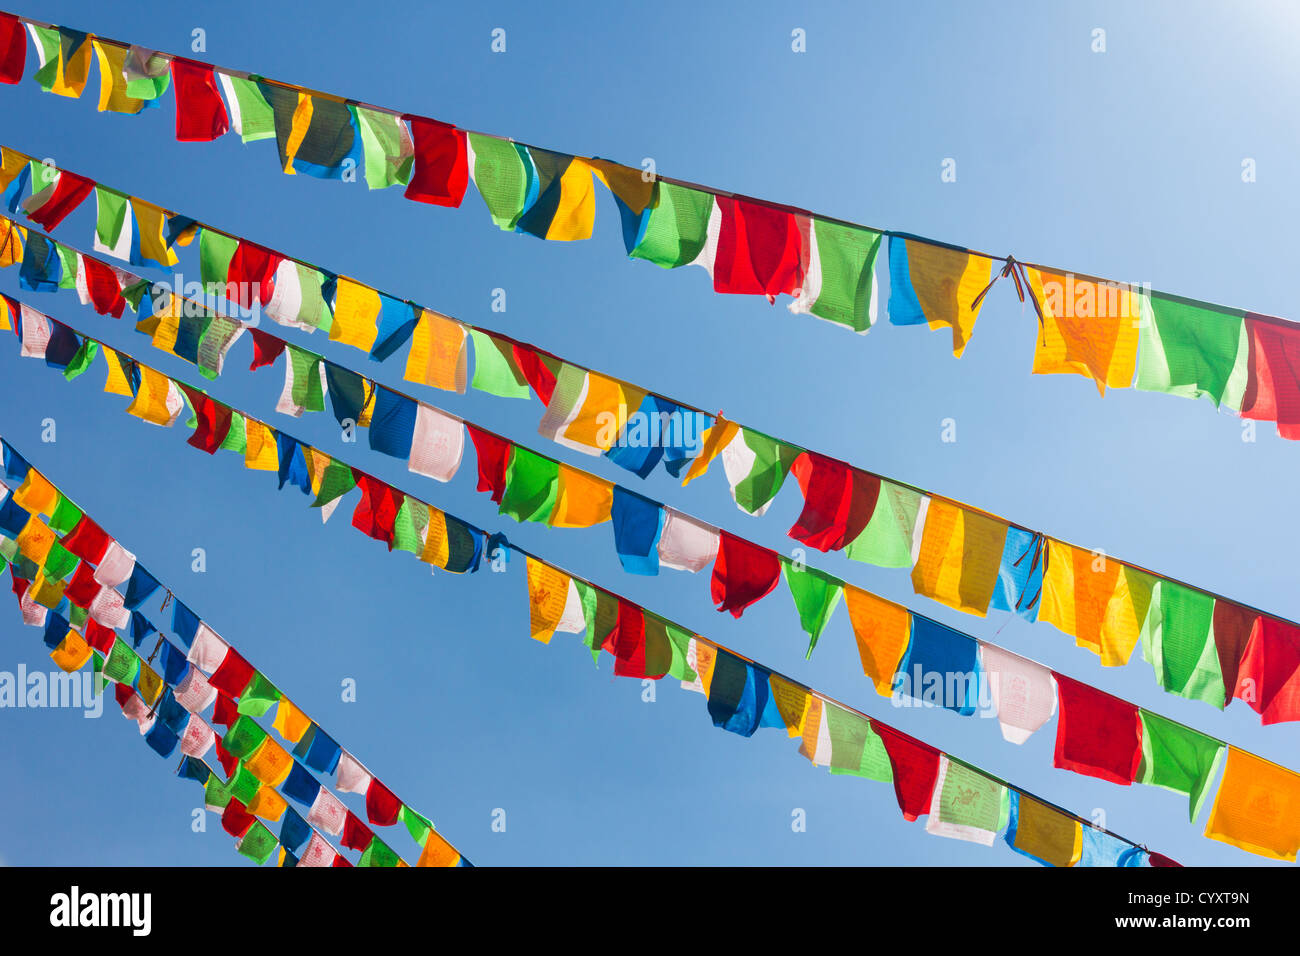 Brandissant des drapeaux de prière tibetains bouddhiste dans le vent contre le ciel bleu Banque D'Images